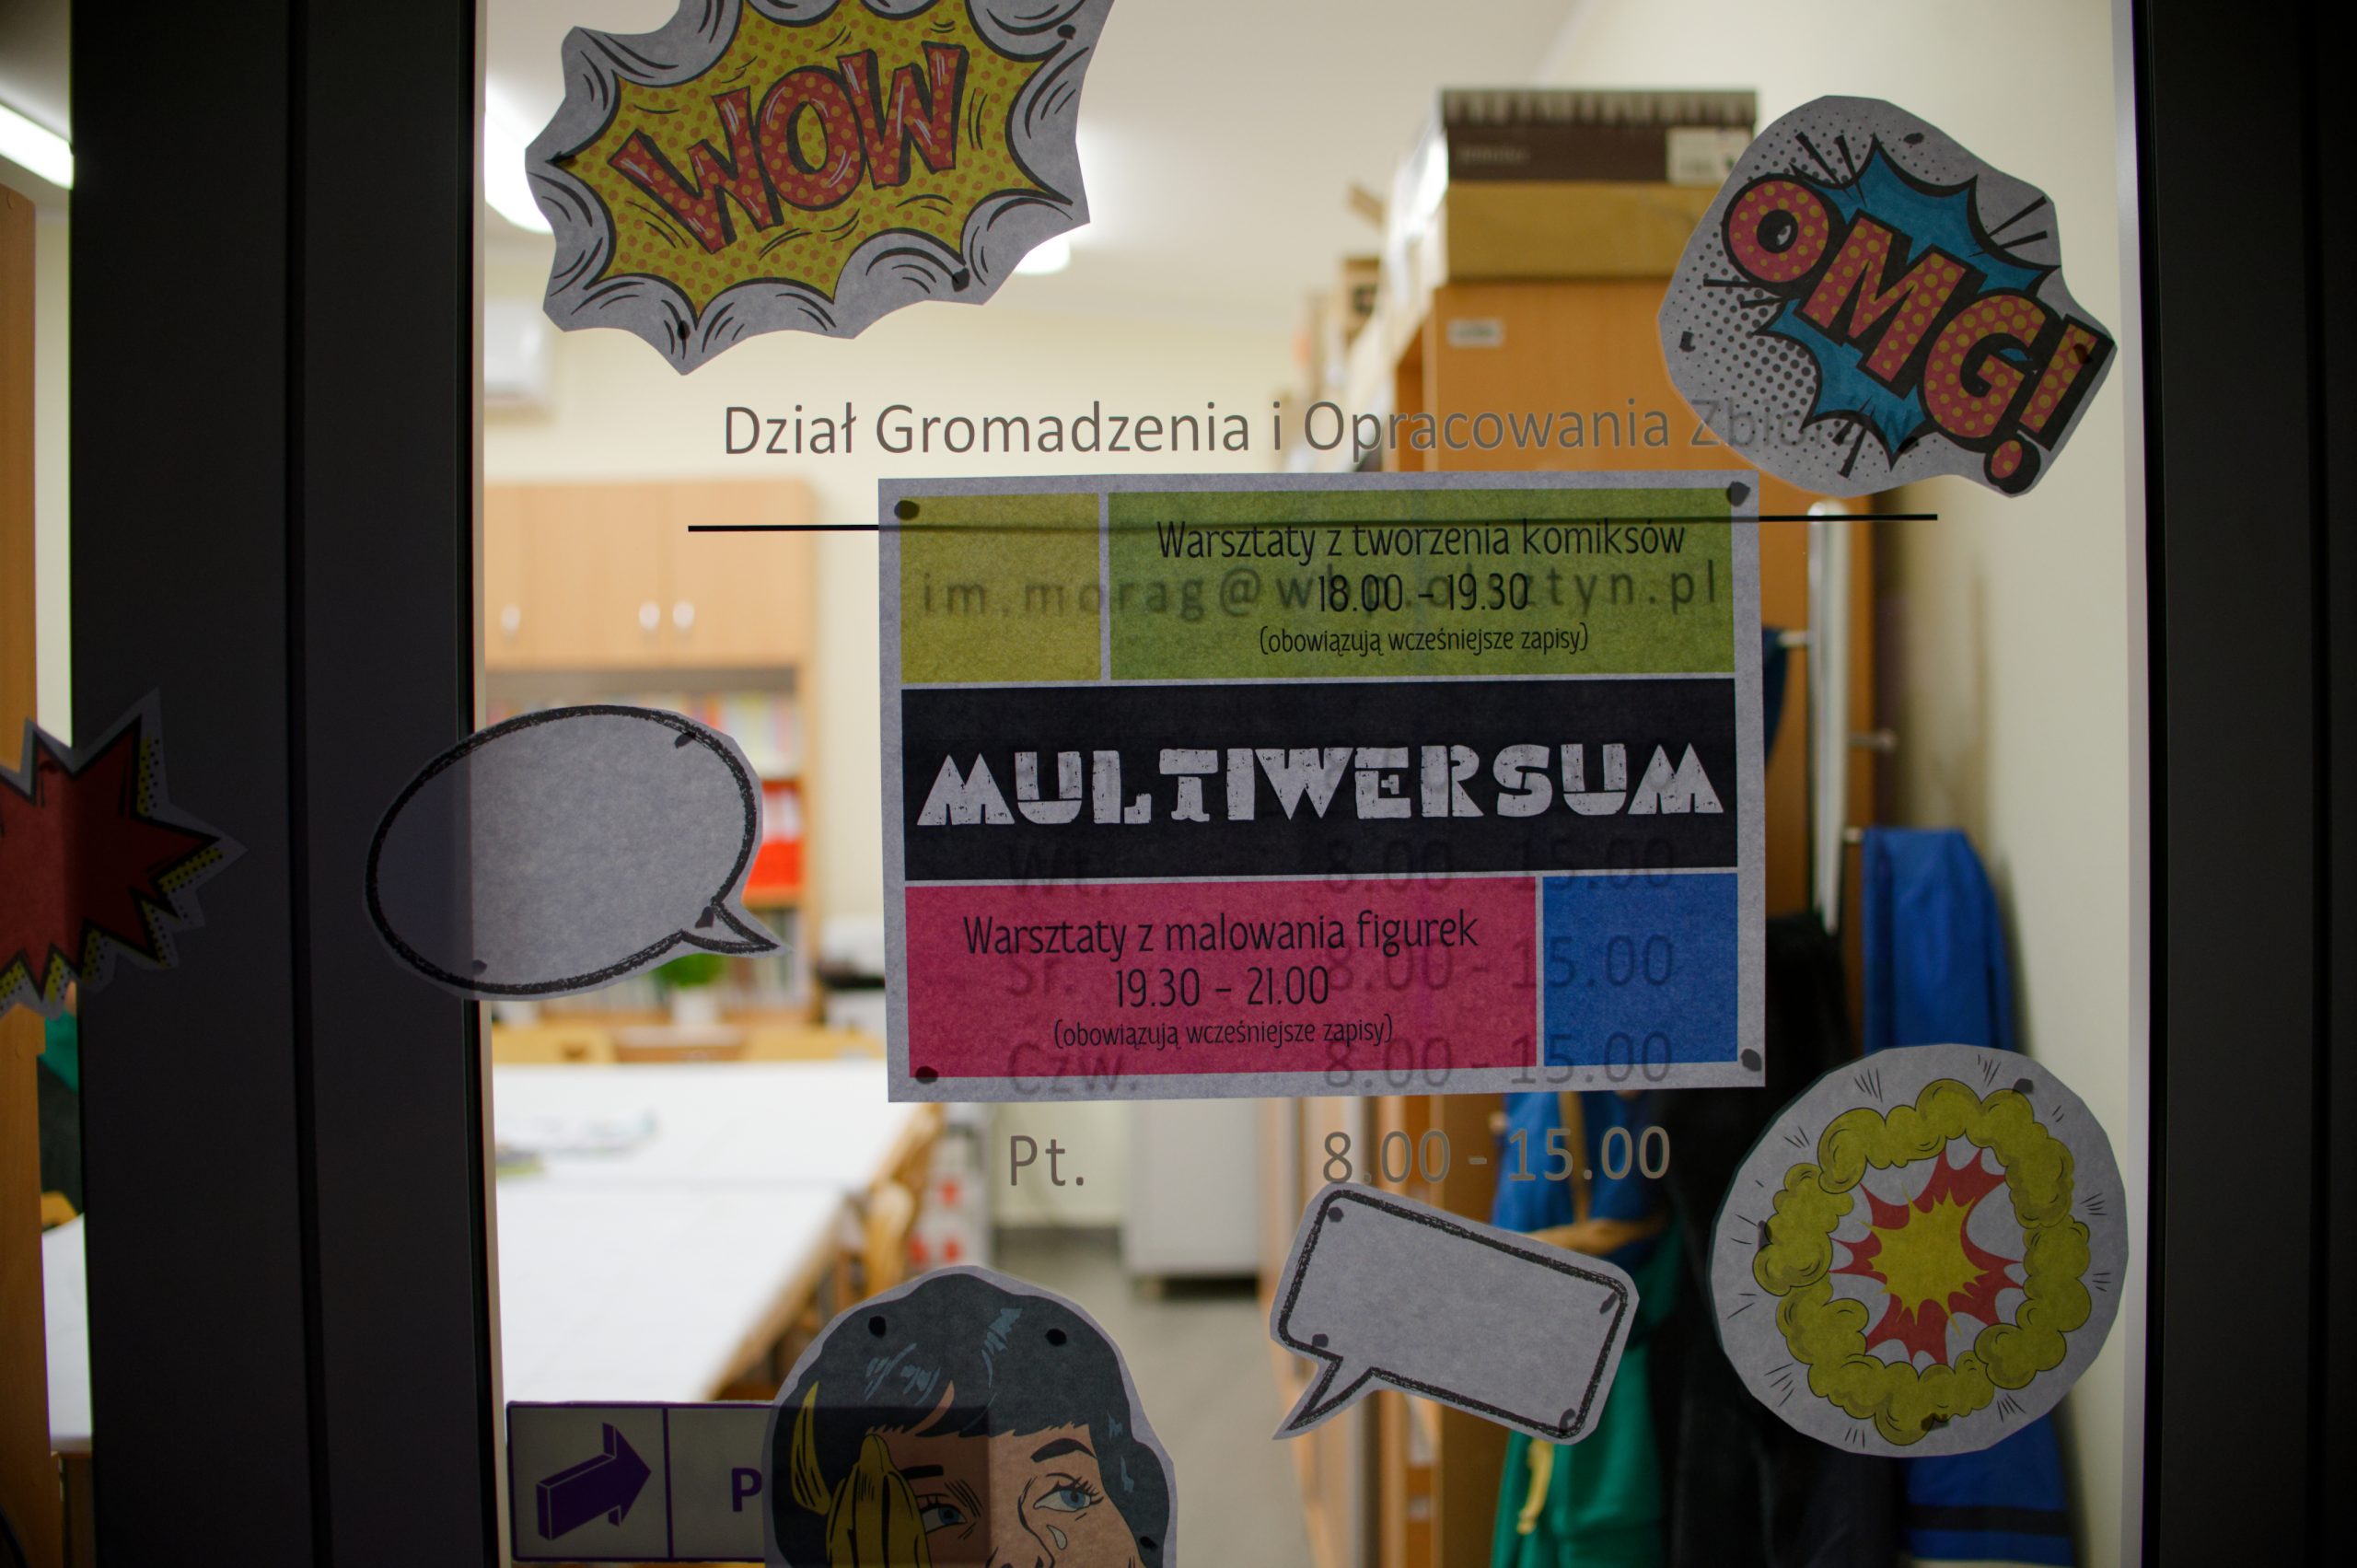 Plakat informujący o warsztatach i dekoracje w tematyce komiksu powieszone na drzwiach.